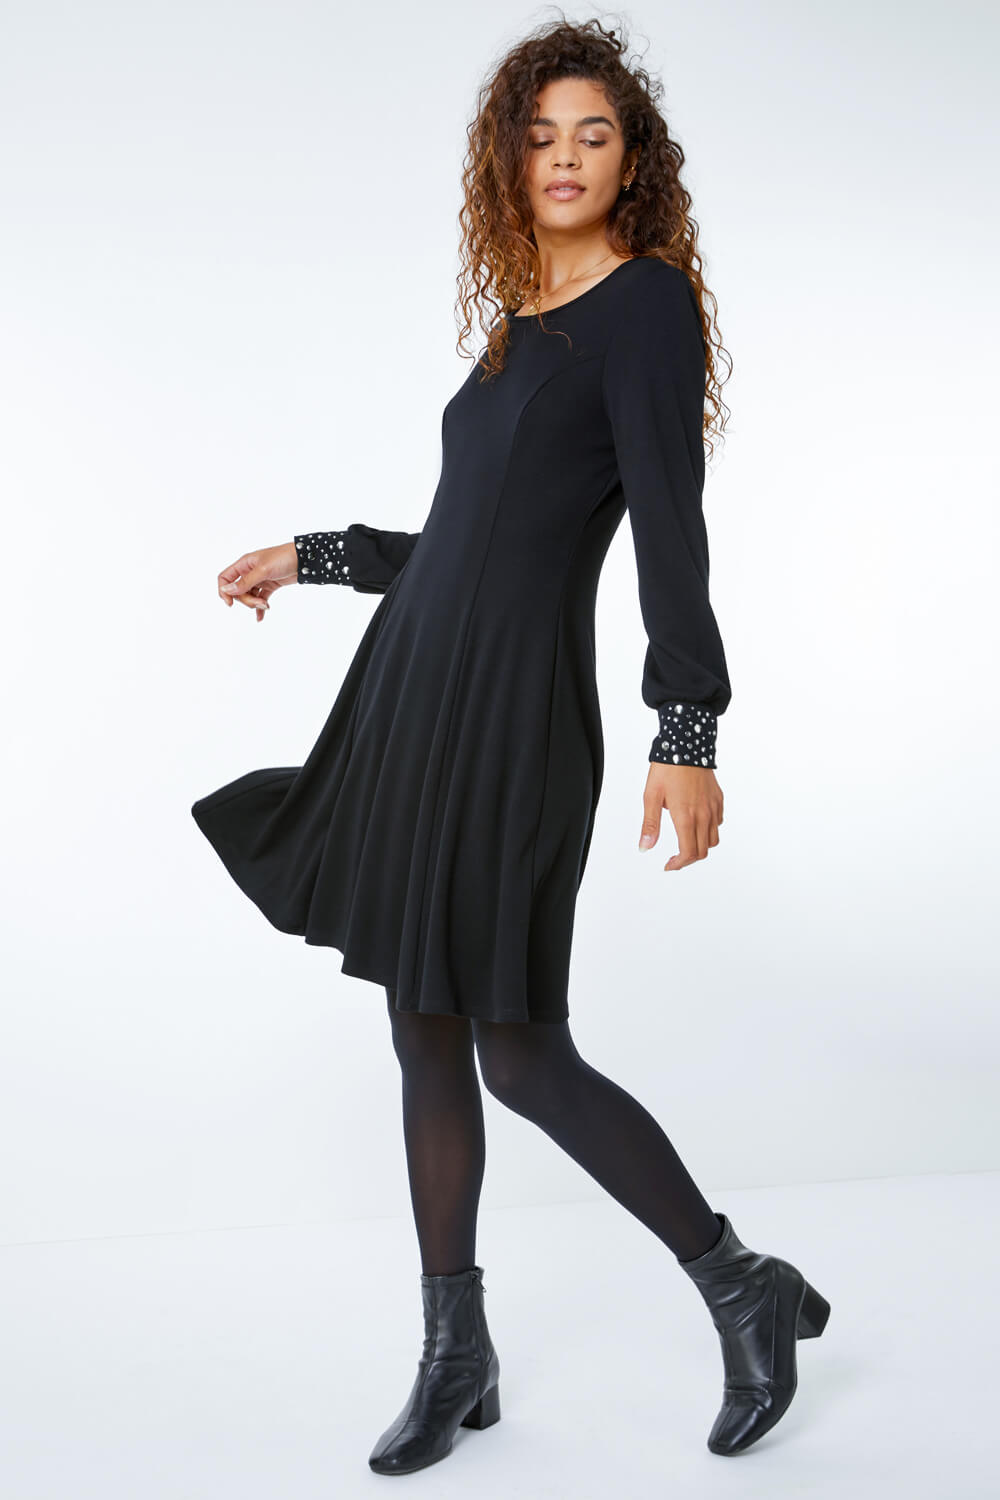 Black Embellished Cuff Skater Dress, Image 1 of 5